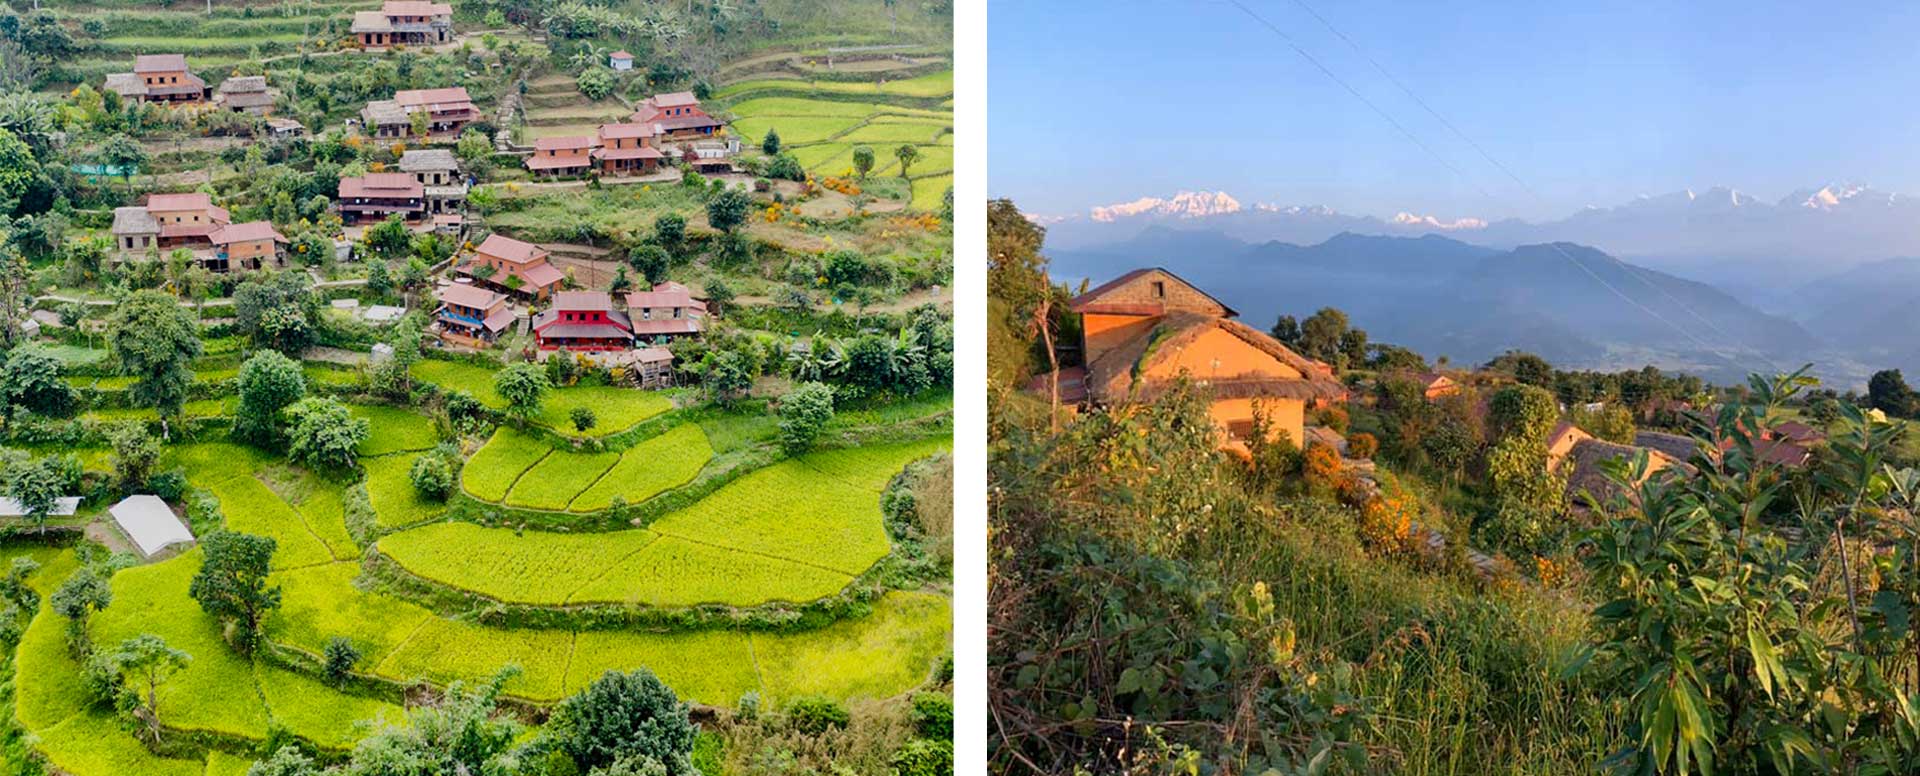 riepe village in nepal